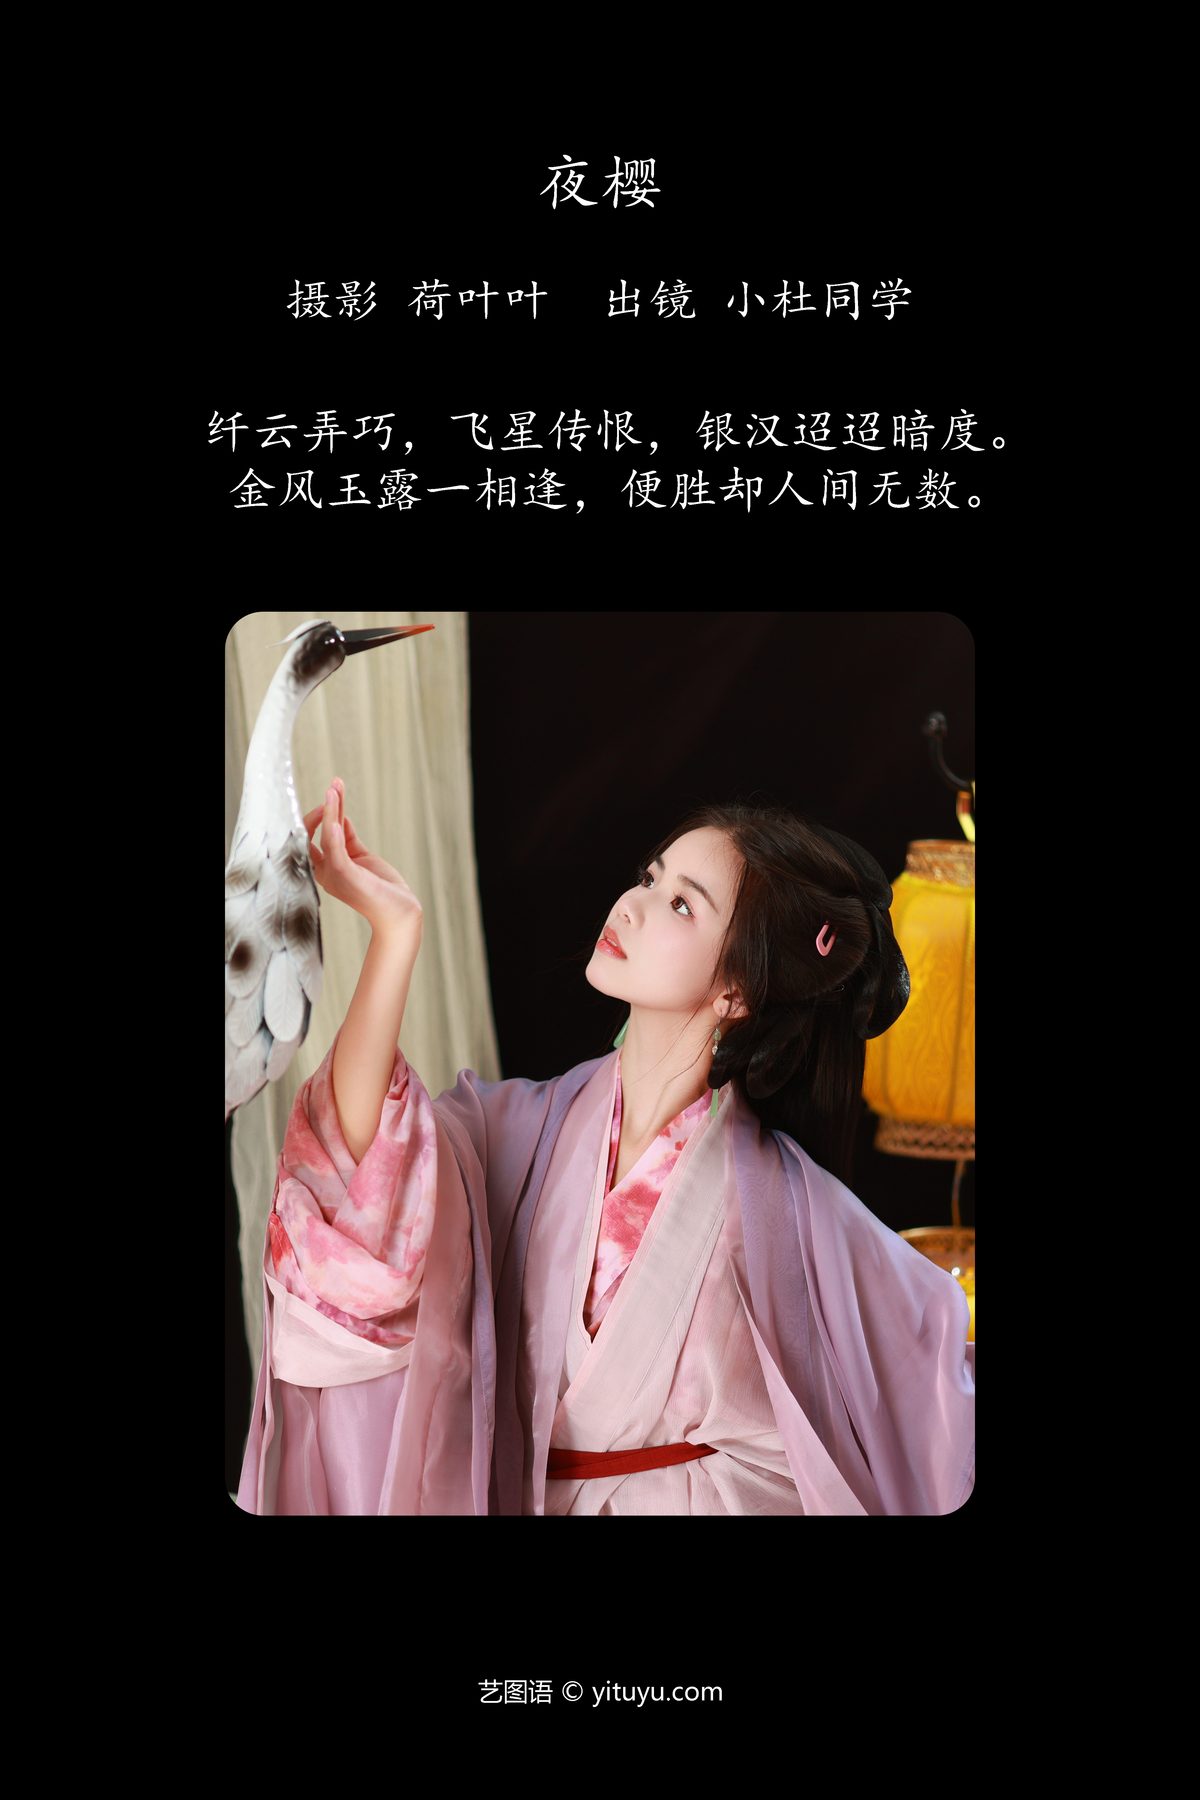 YiTuYu艺图语 Vol 5260 Xiao Du Tong Xue 0002 2105979615.jpg